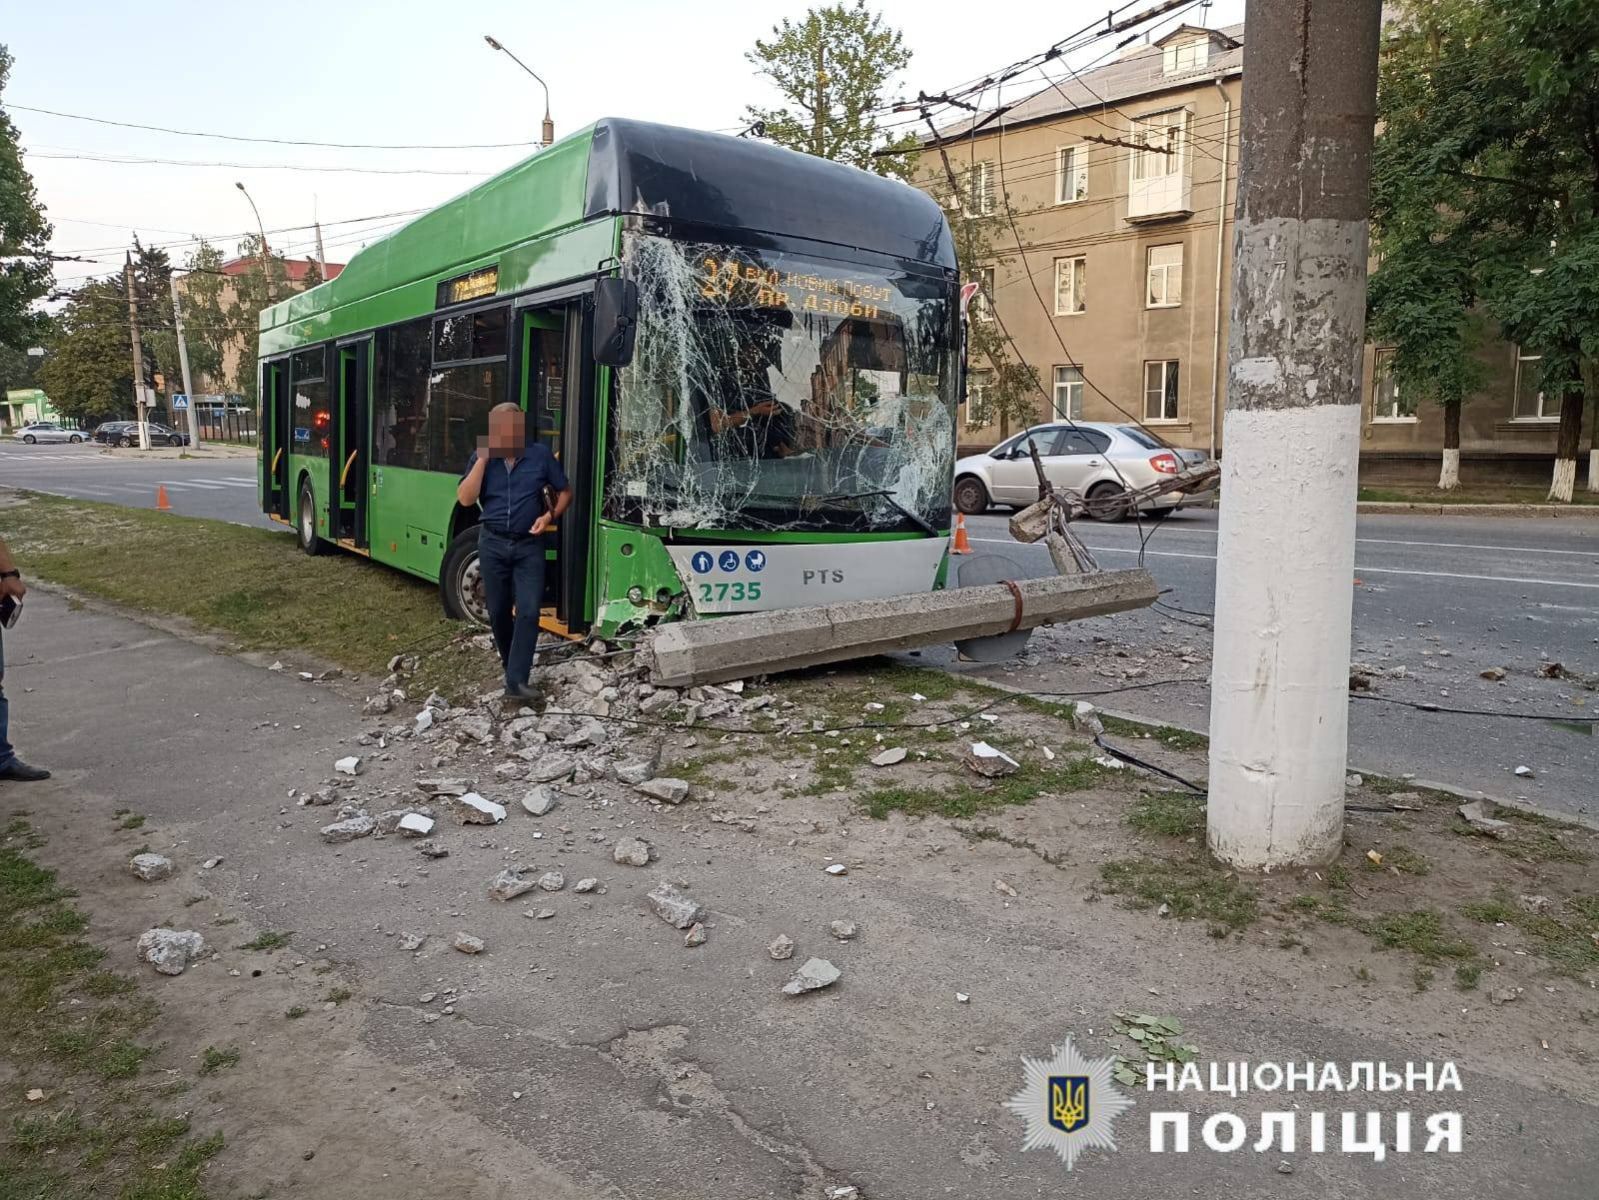 В Харькове троллейбус сбил четверых людей на пешеходном переходе